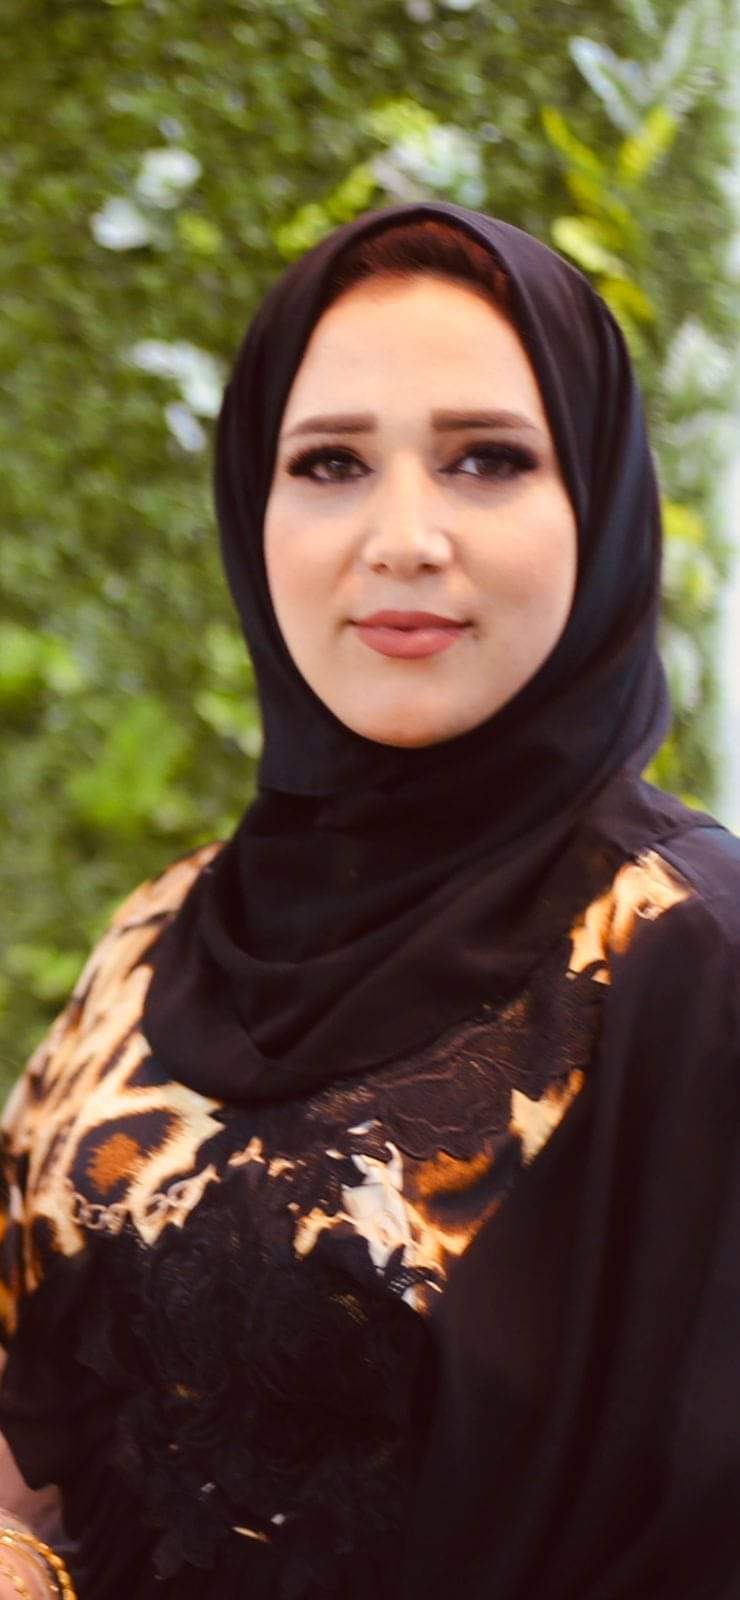 مملكة رشا الطحاوي تتربع على عرش خبراء التجميل في مصر والعالم العربي